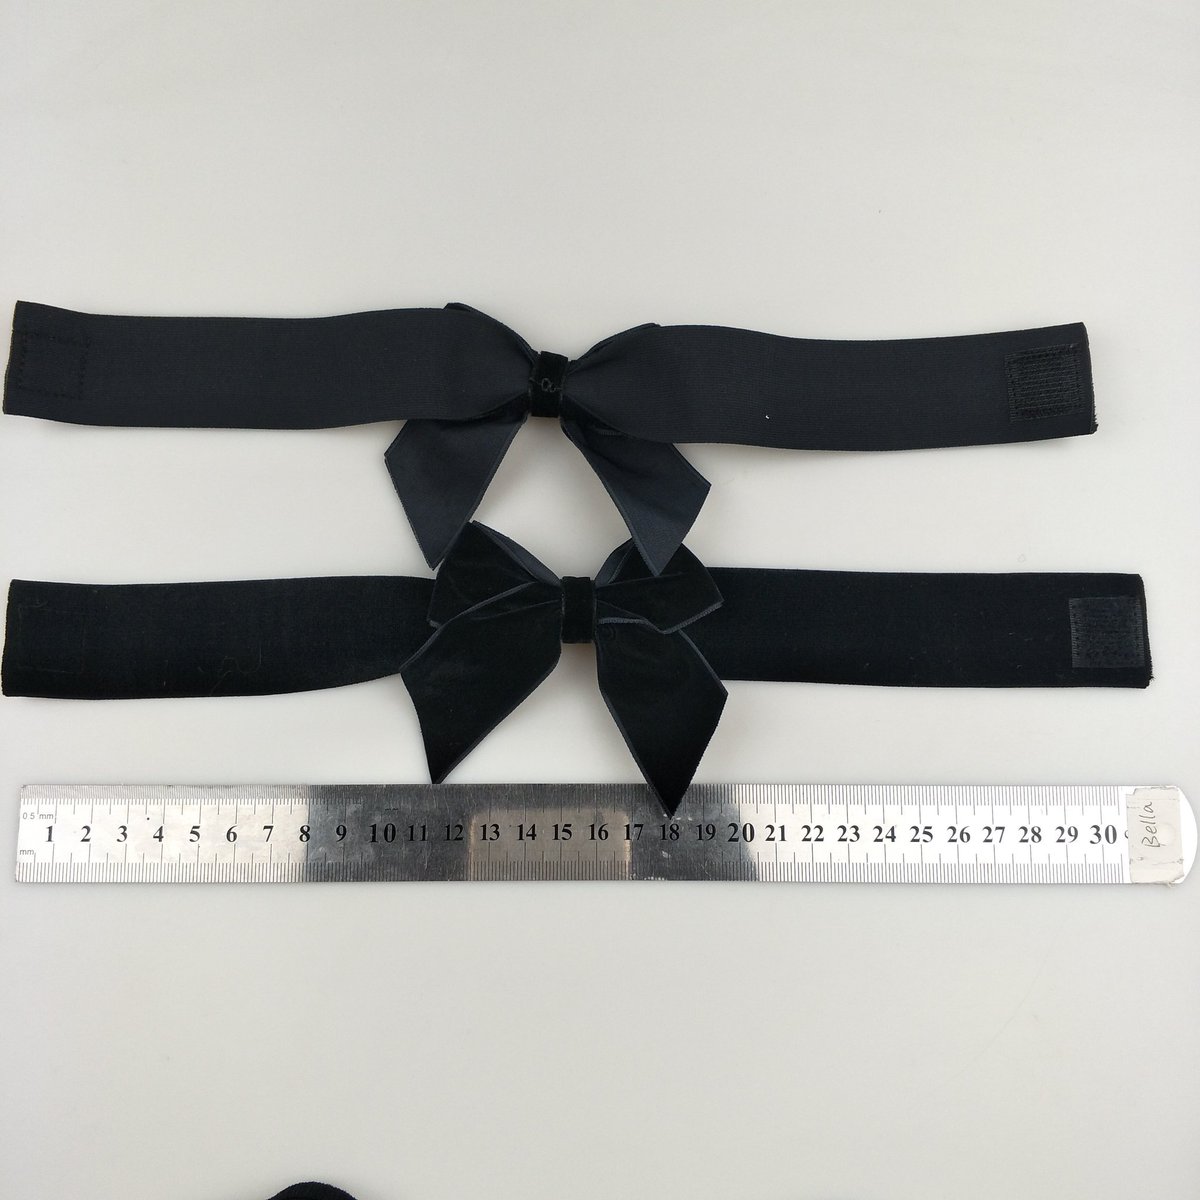 Black velvet packing bow will Velcro #packingbow #velvet #bow with Velcro#ribbonbow #ribbonfactory #ribbonsupplier #